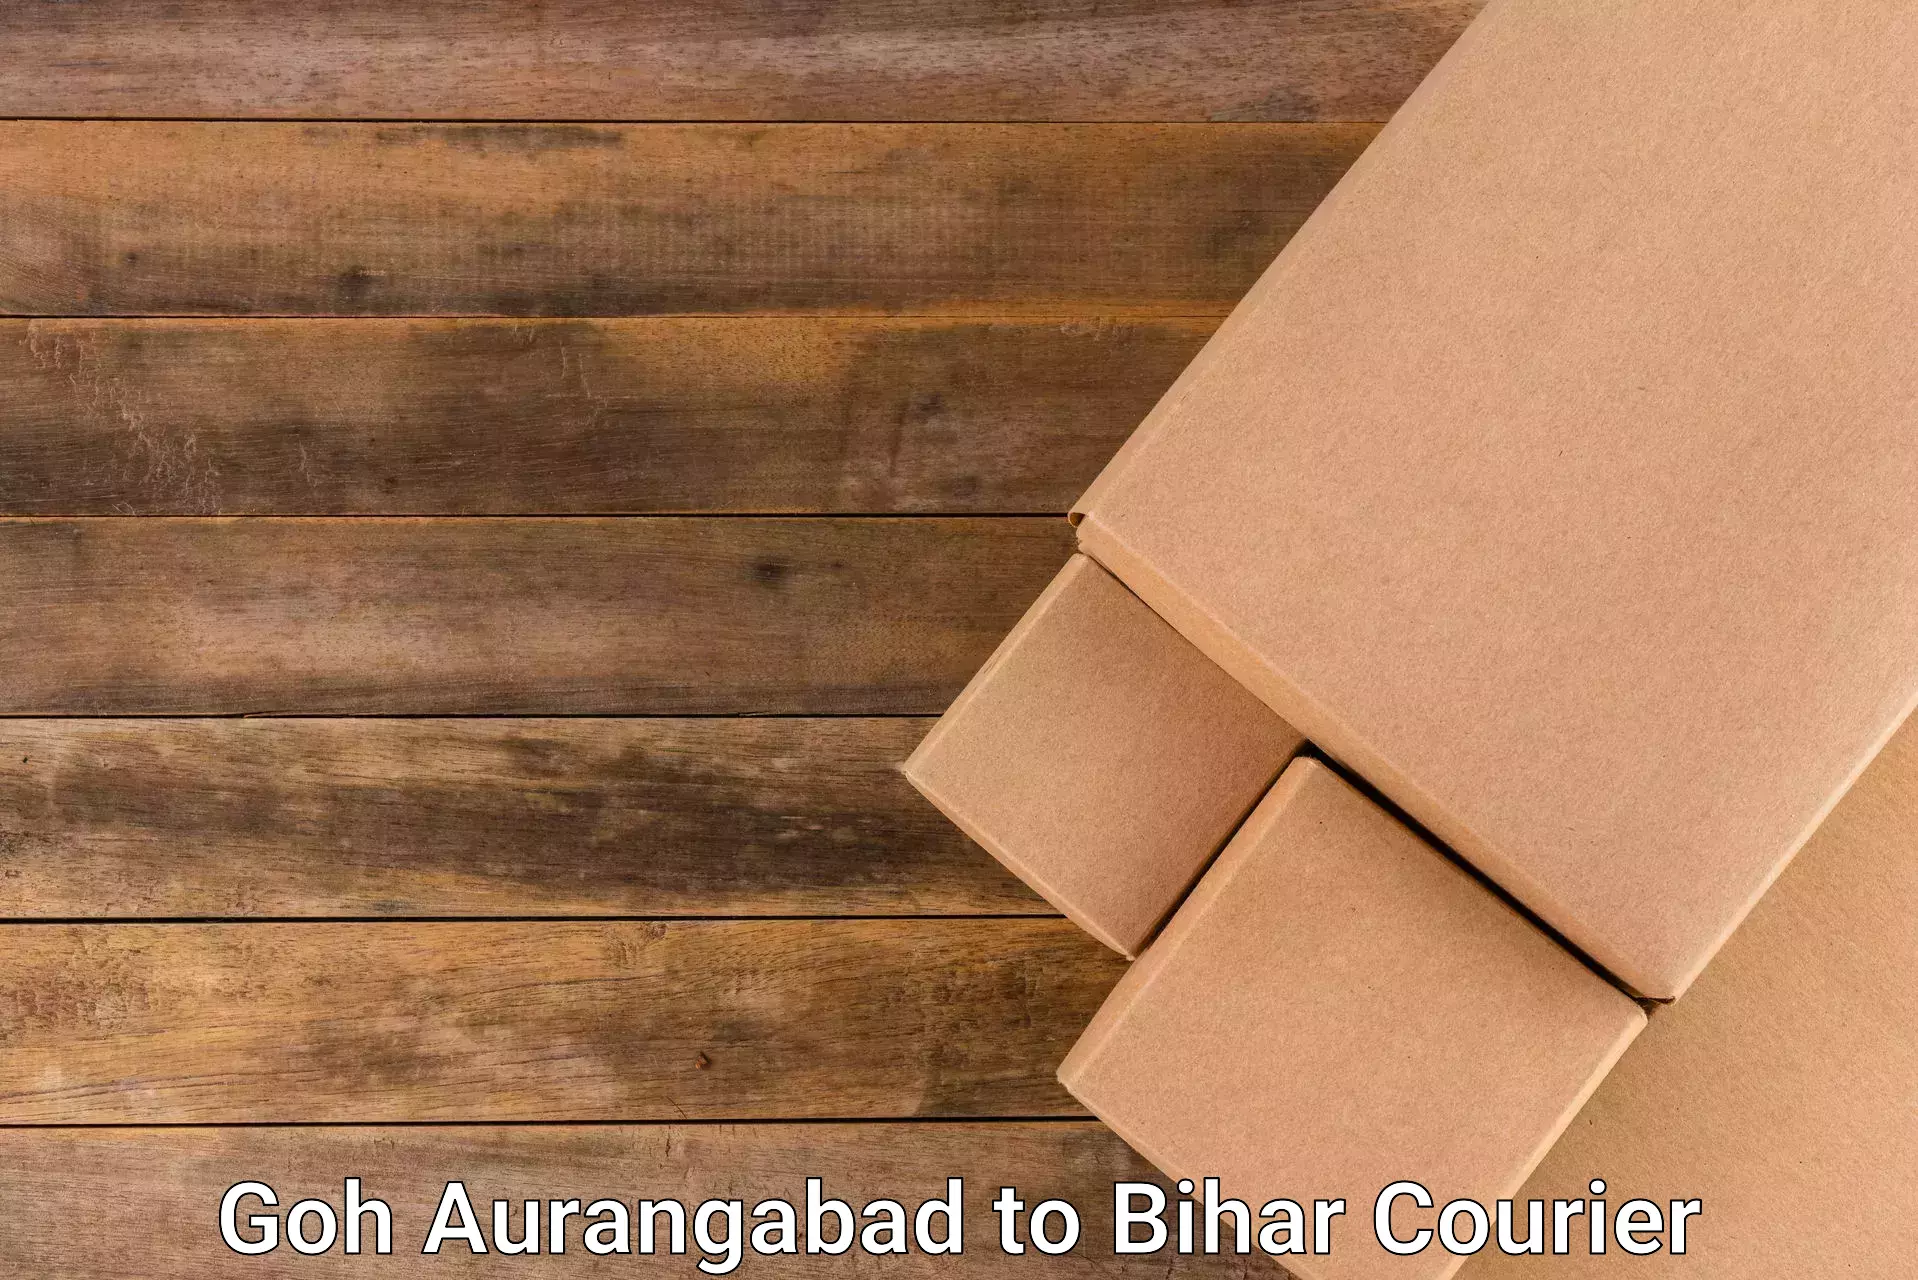 Courier dispatch services Goh Aurangabad to Hajipur Vaishali